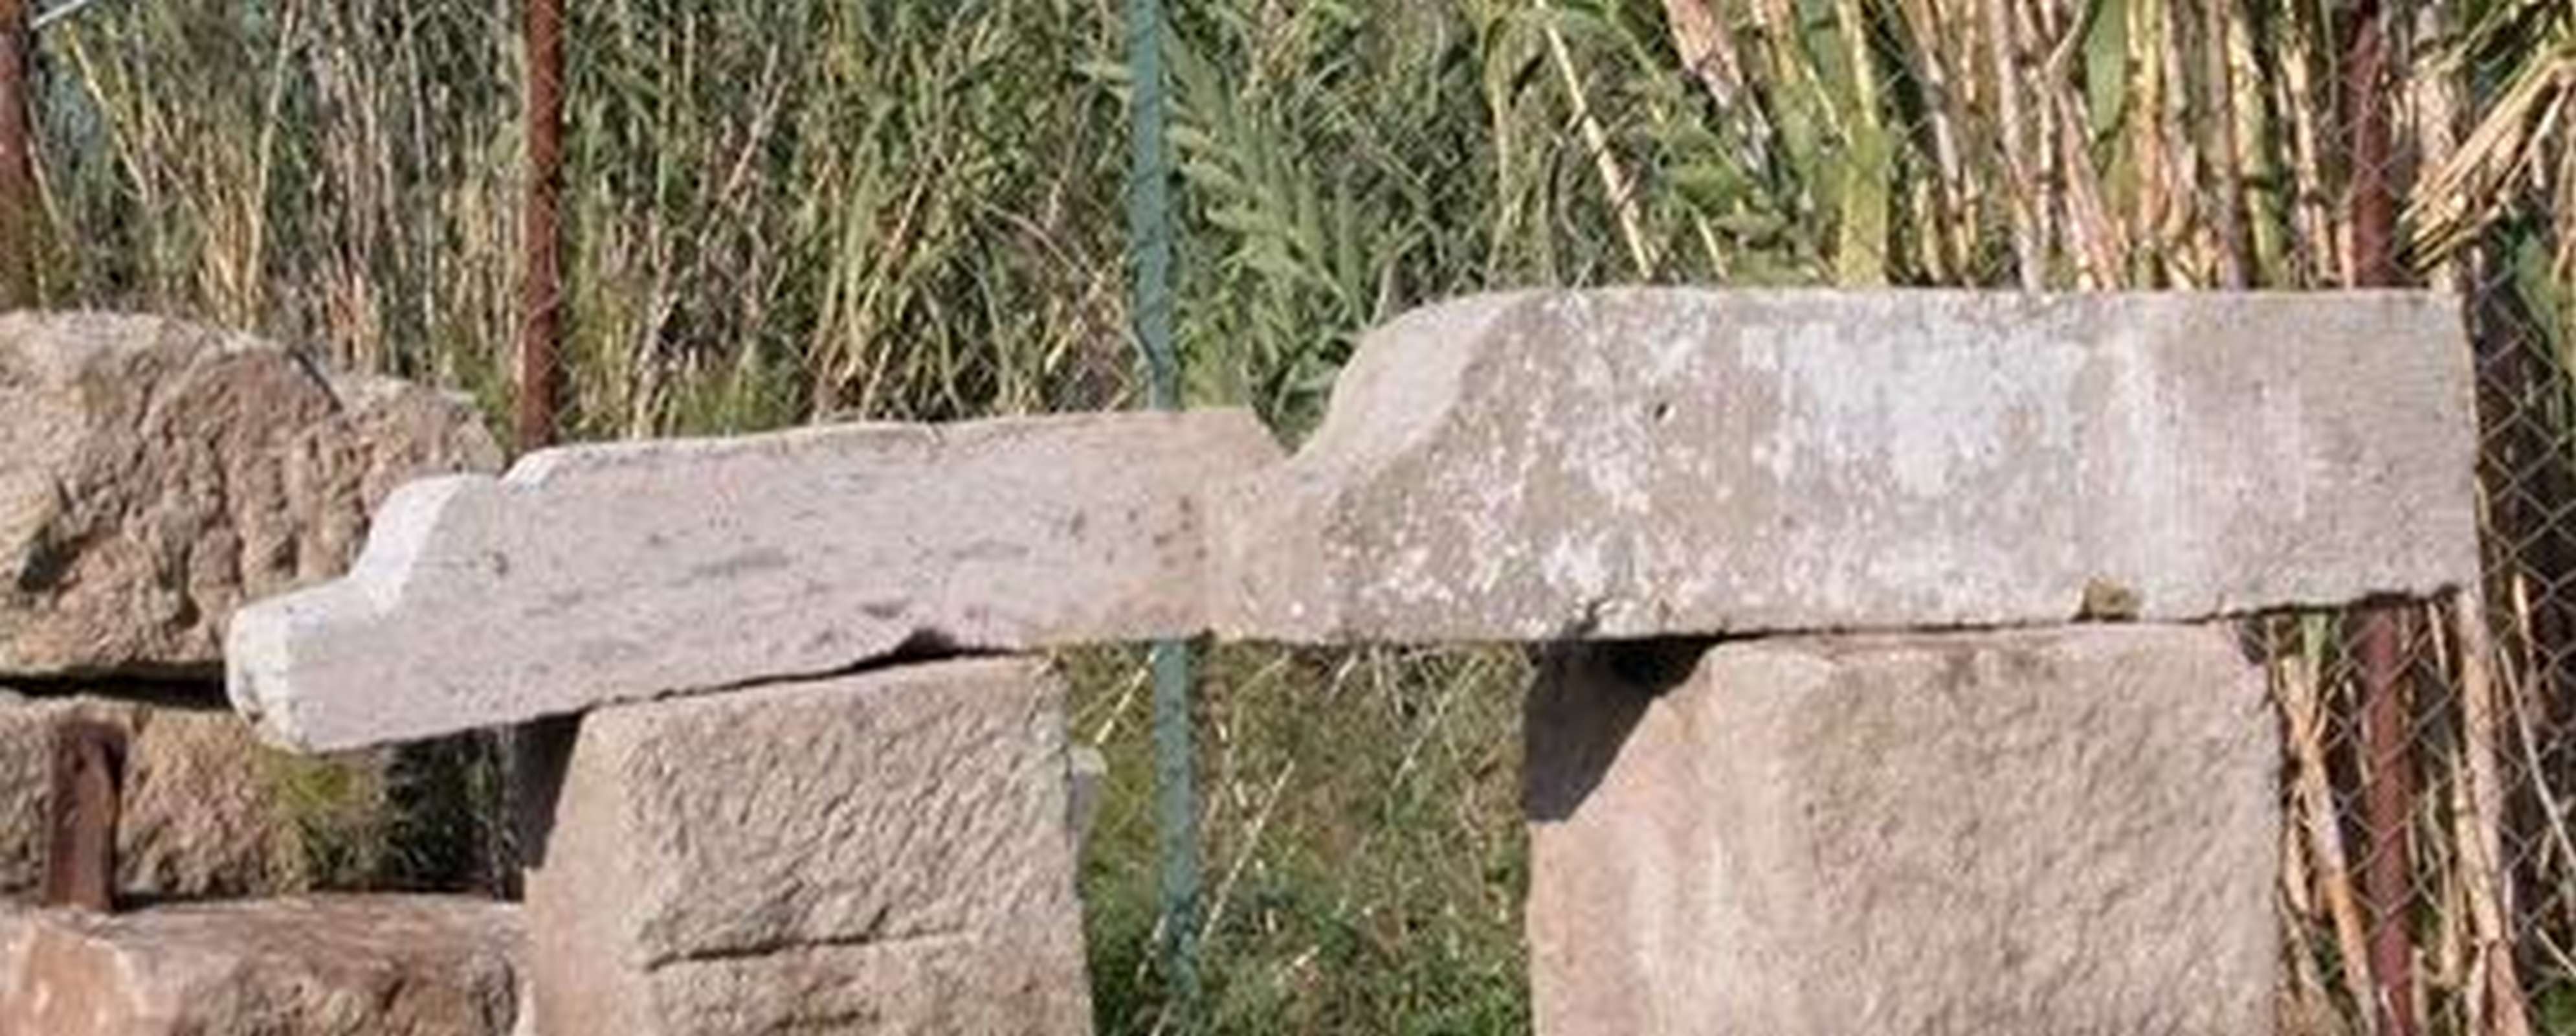 Nr. 2 mensole in pietra - Mensole antiche - Architettura - Prodotti - Antichità Fiorillo